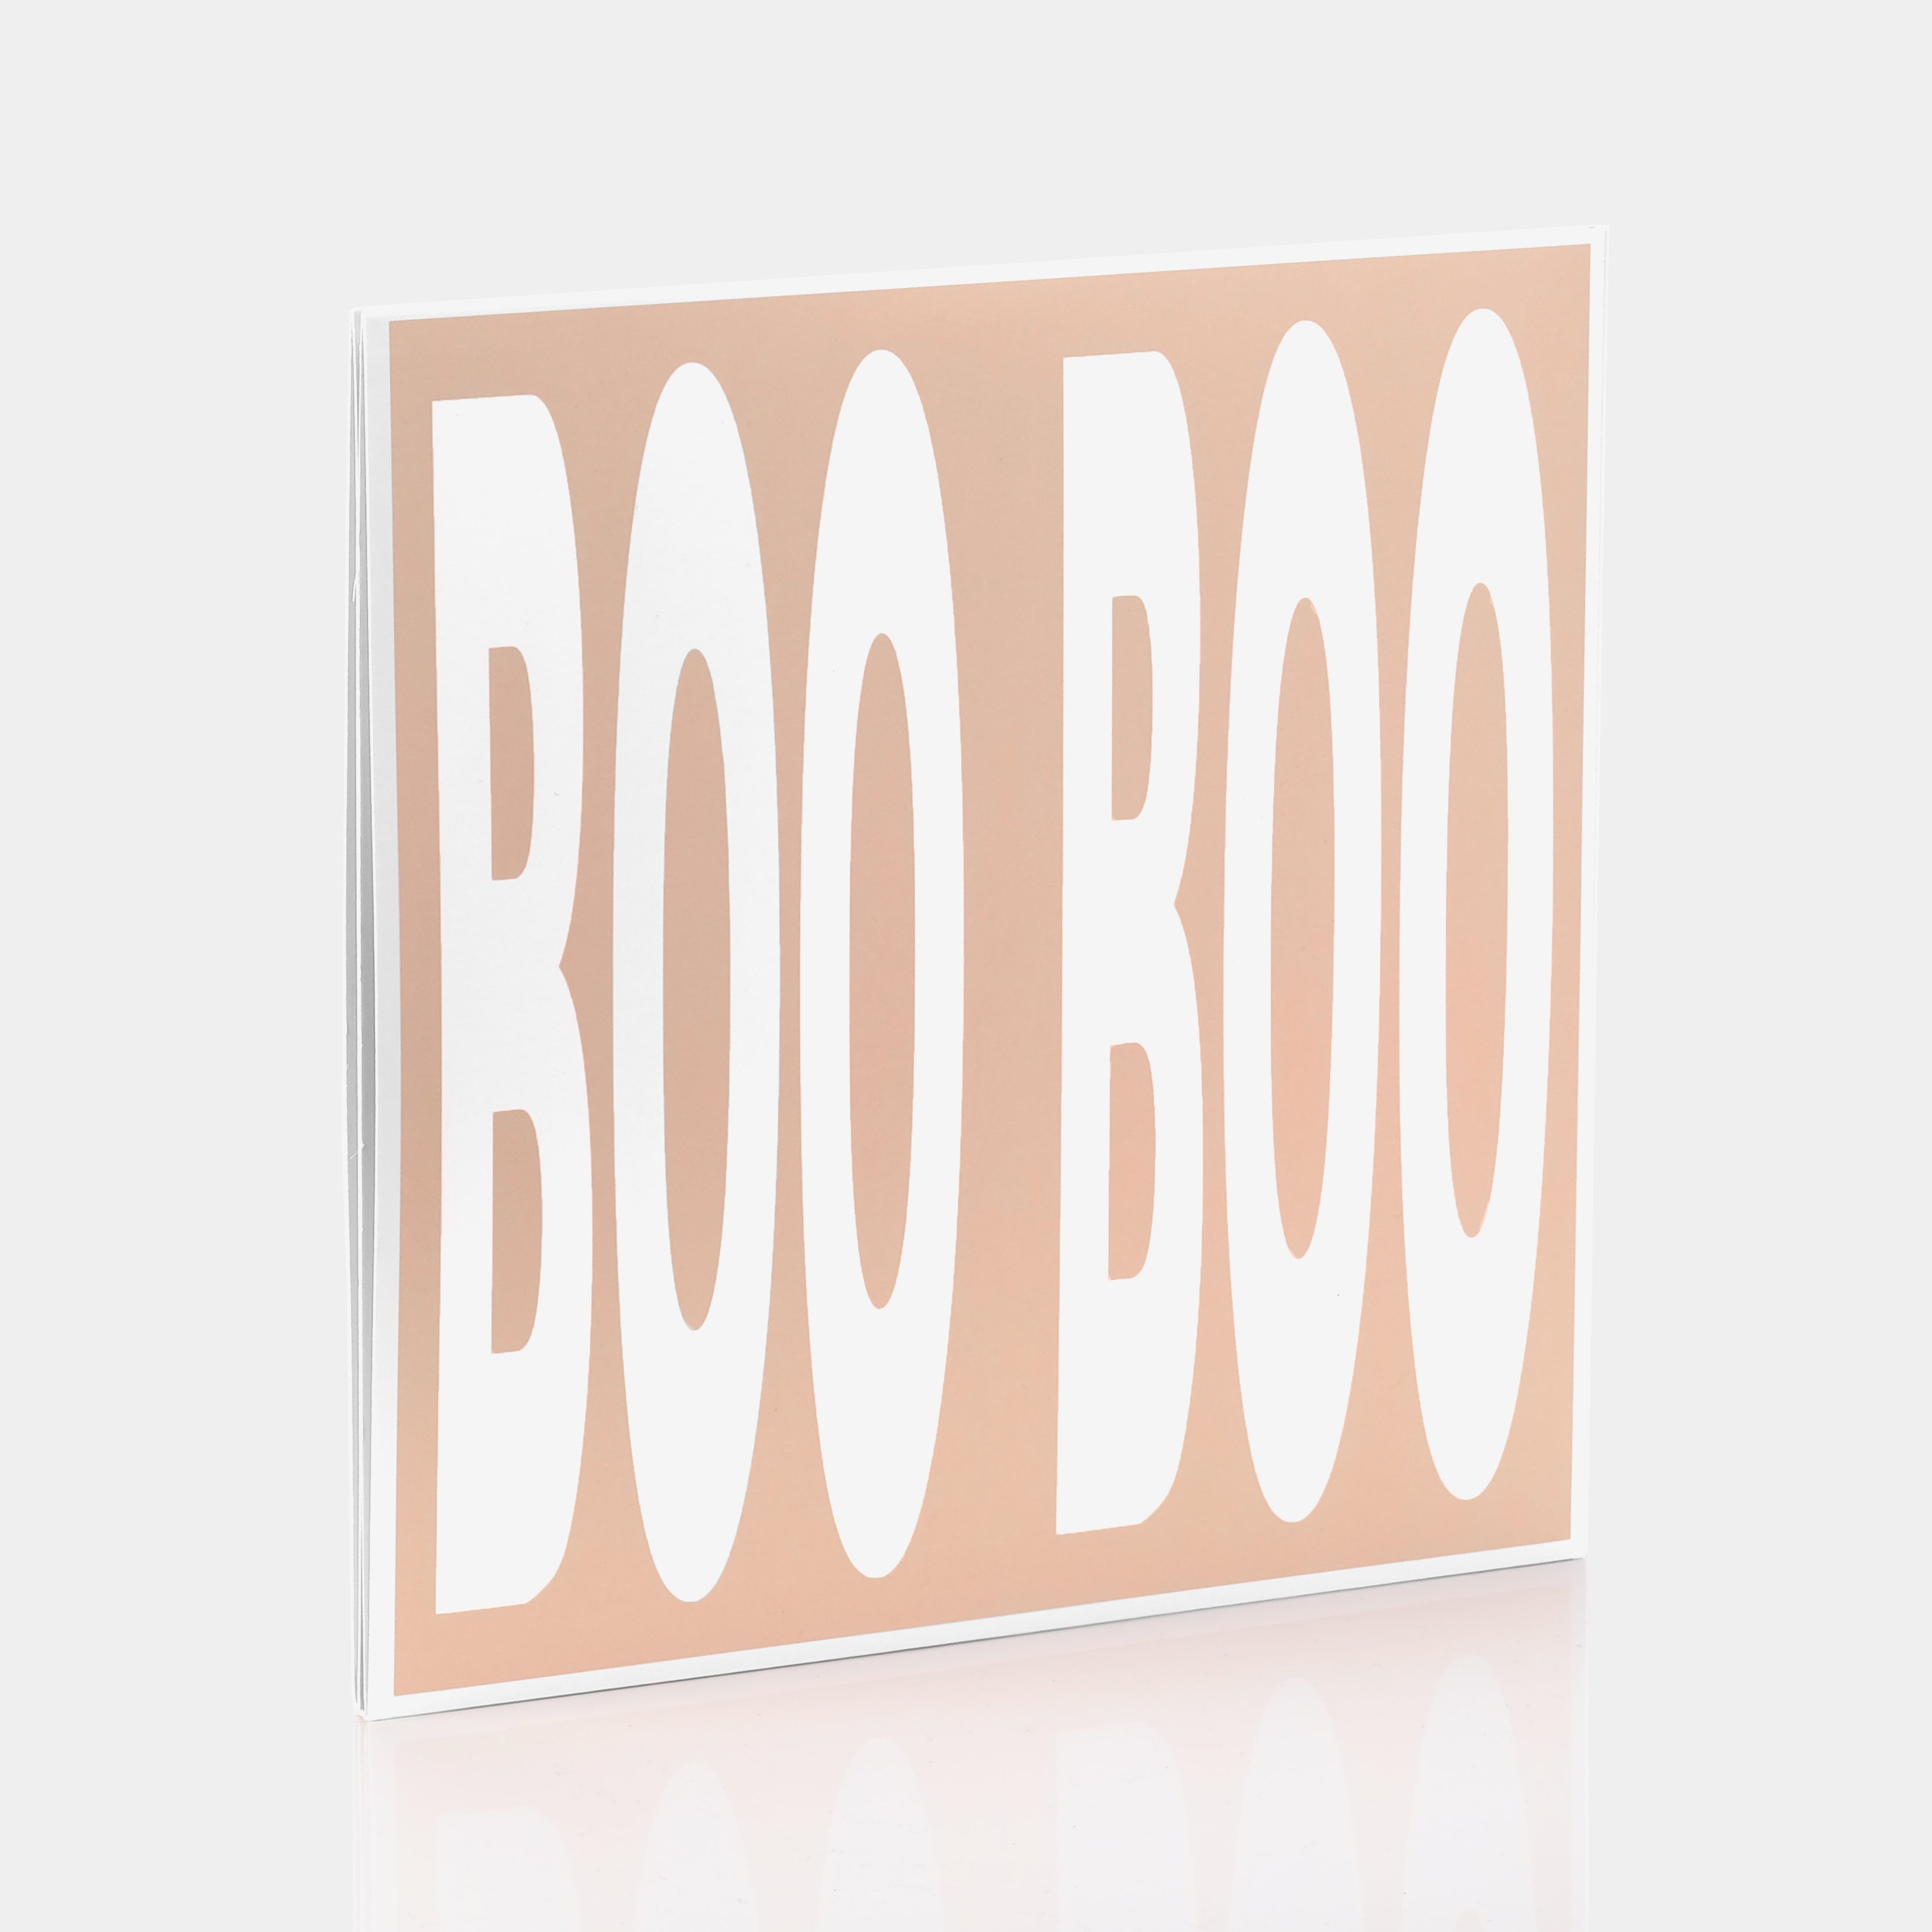 Toro y Moi - Boo Boo 2xLP Vinyl Record